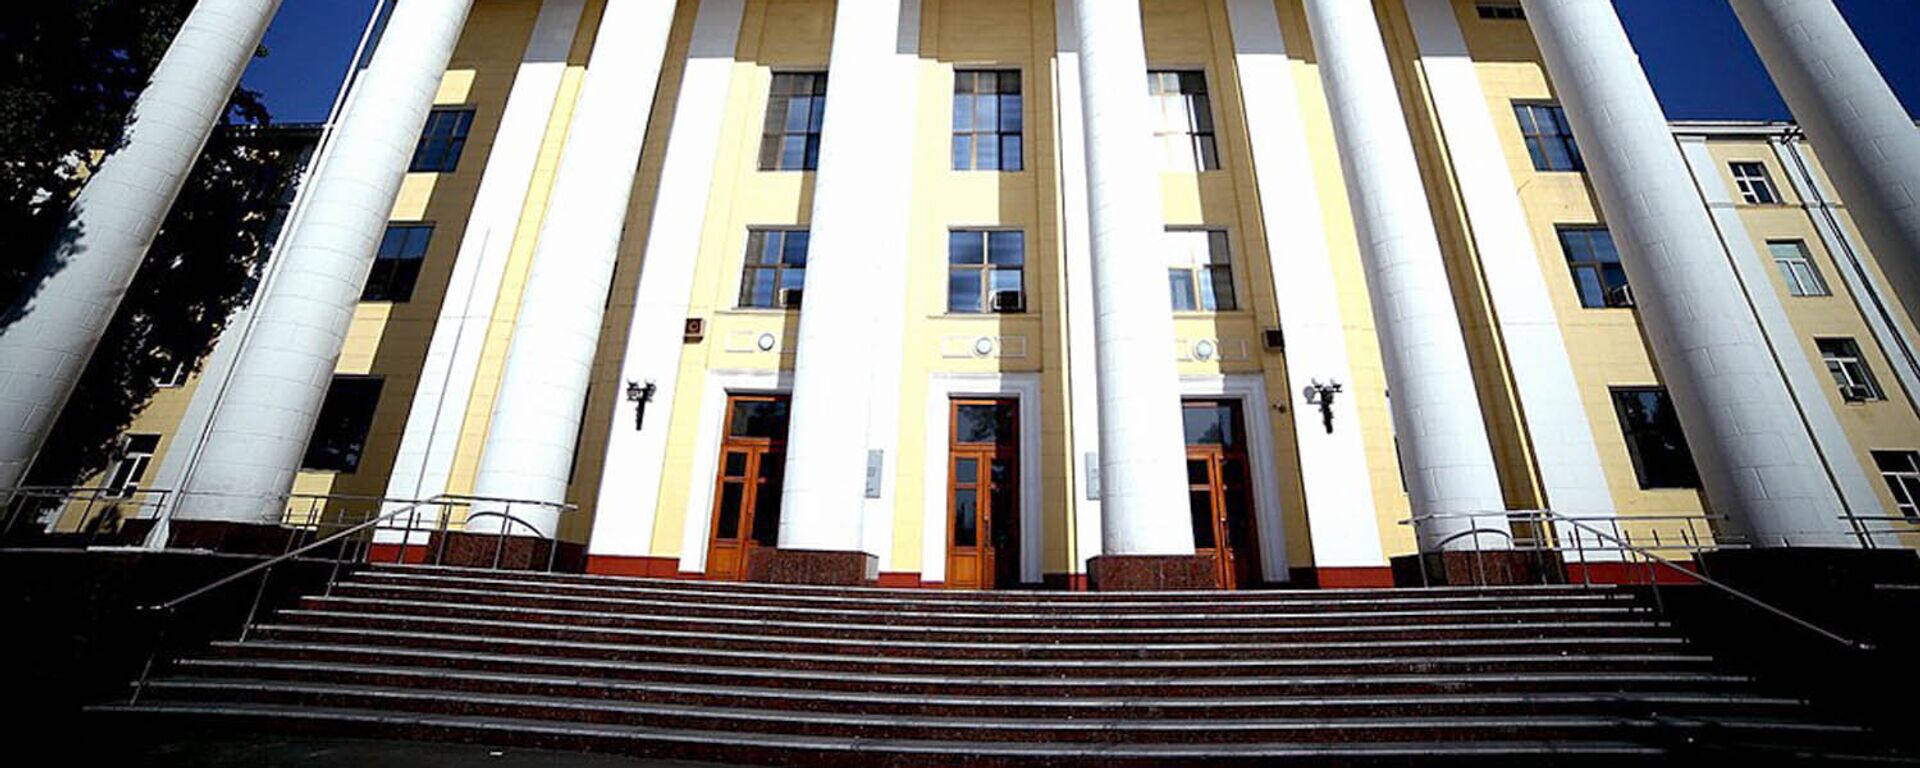 Здание Ташкентского университета информационных технологий - Sputnik Узбекистан, 1920, 09.10.2020